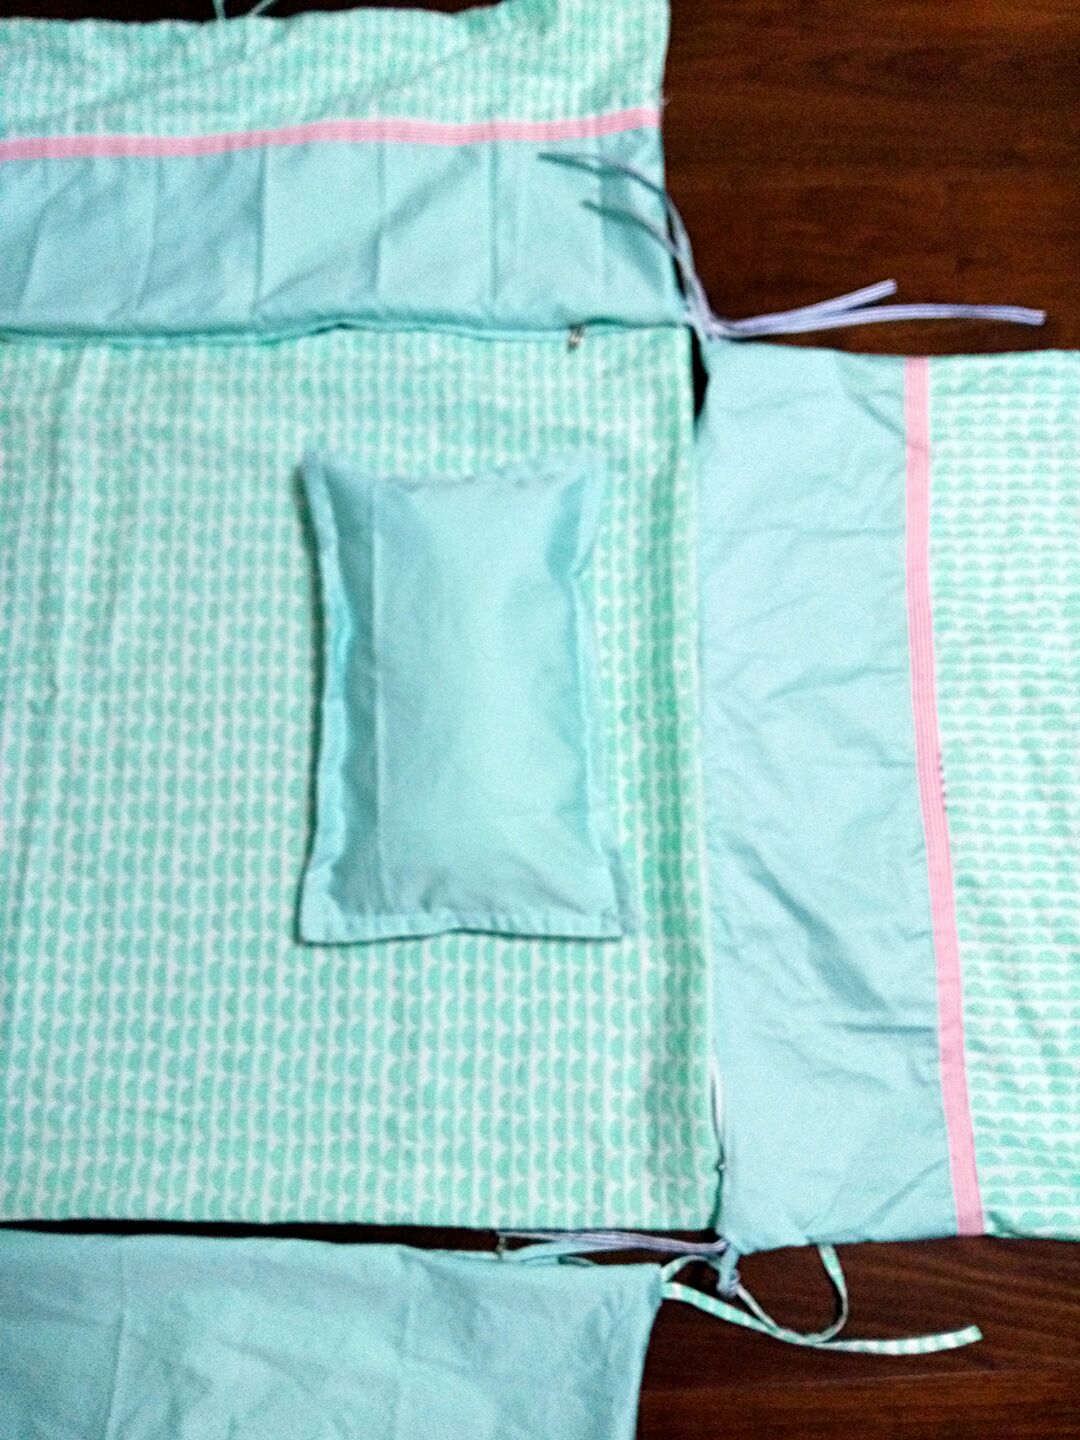 布艺婴儿床床围的制作方法图解教程╭★肉丁网